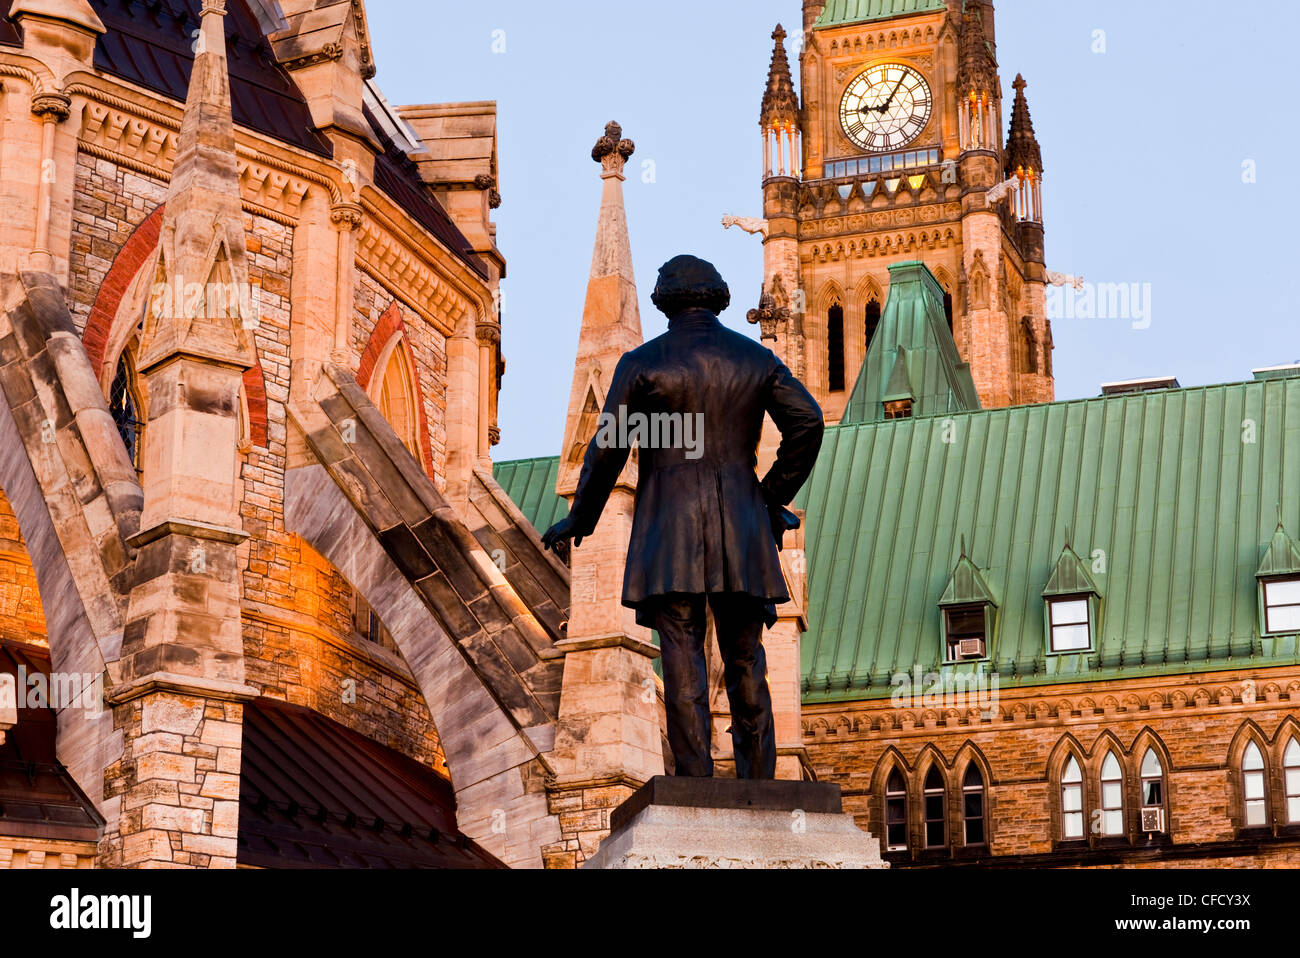 Thomas D'Arcy McGee statue, édifice du Centre, Colline du Parlement, Ottawa, Ontario, Canada Banque D'Images